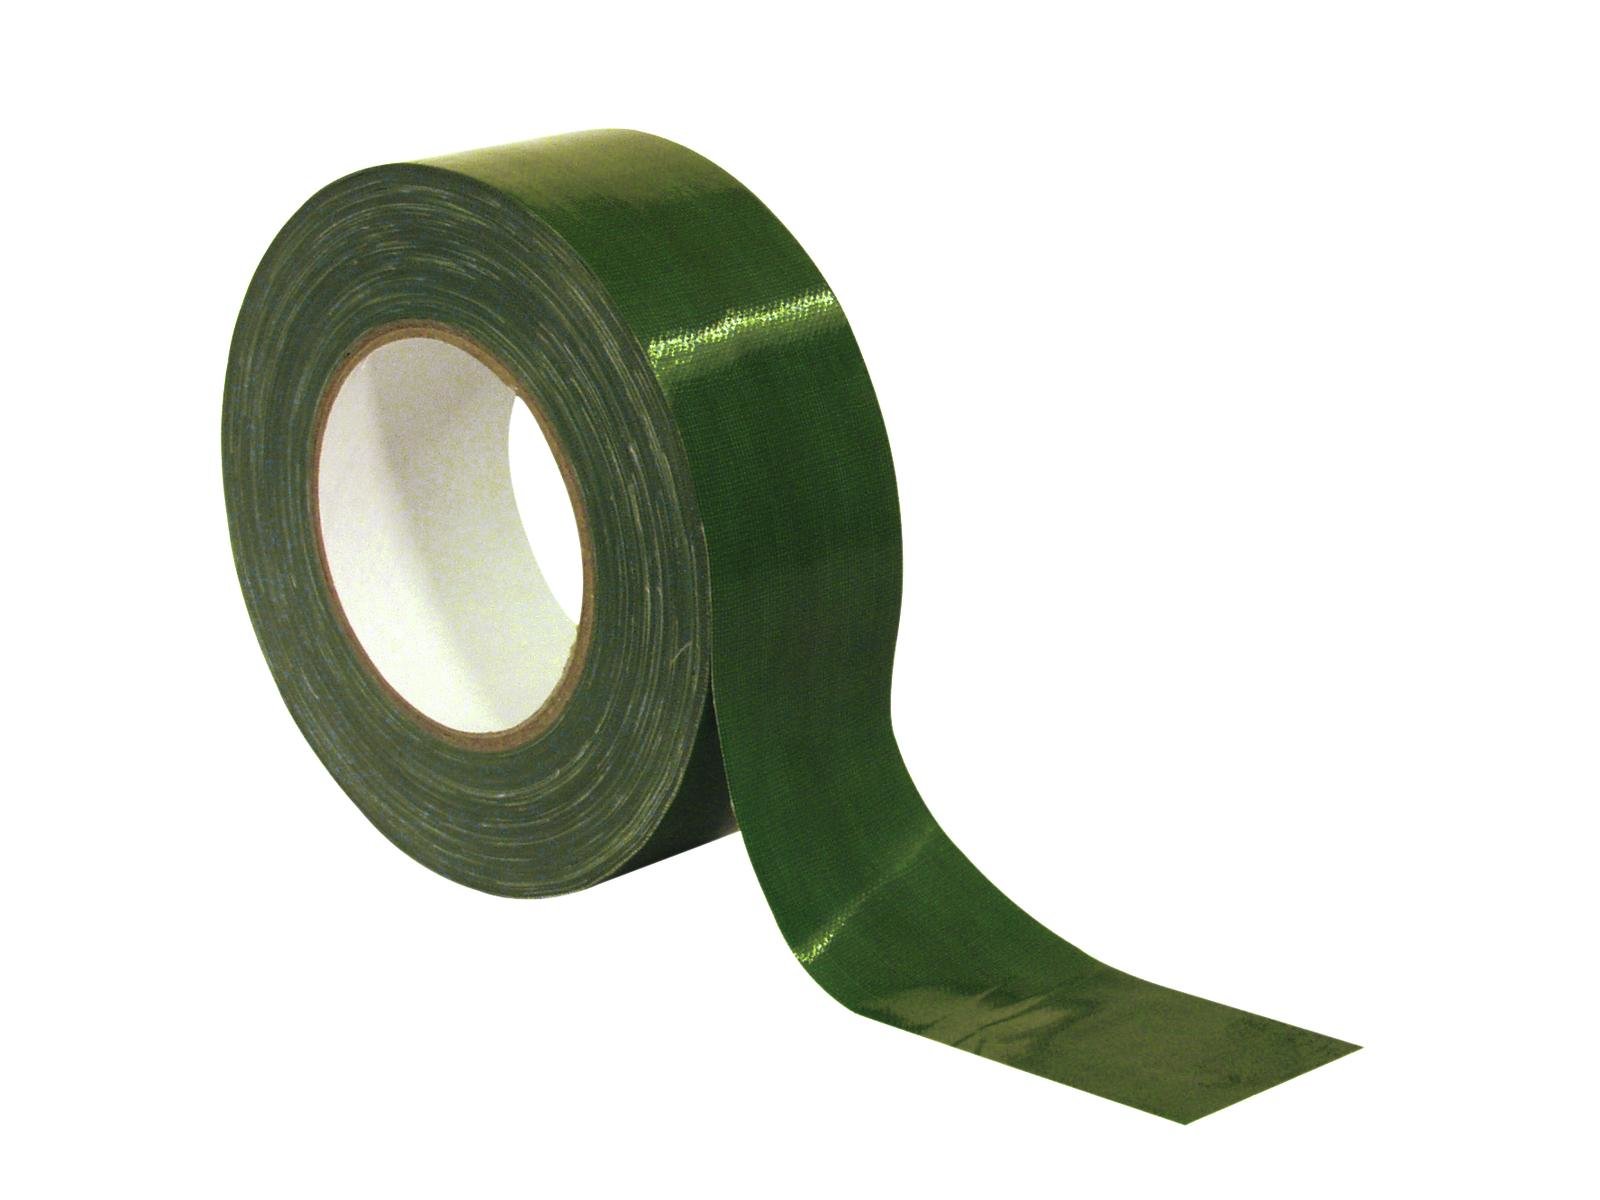 ACCESSORY Gaffa Tape Pro 50mm x 50m grün